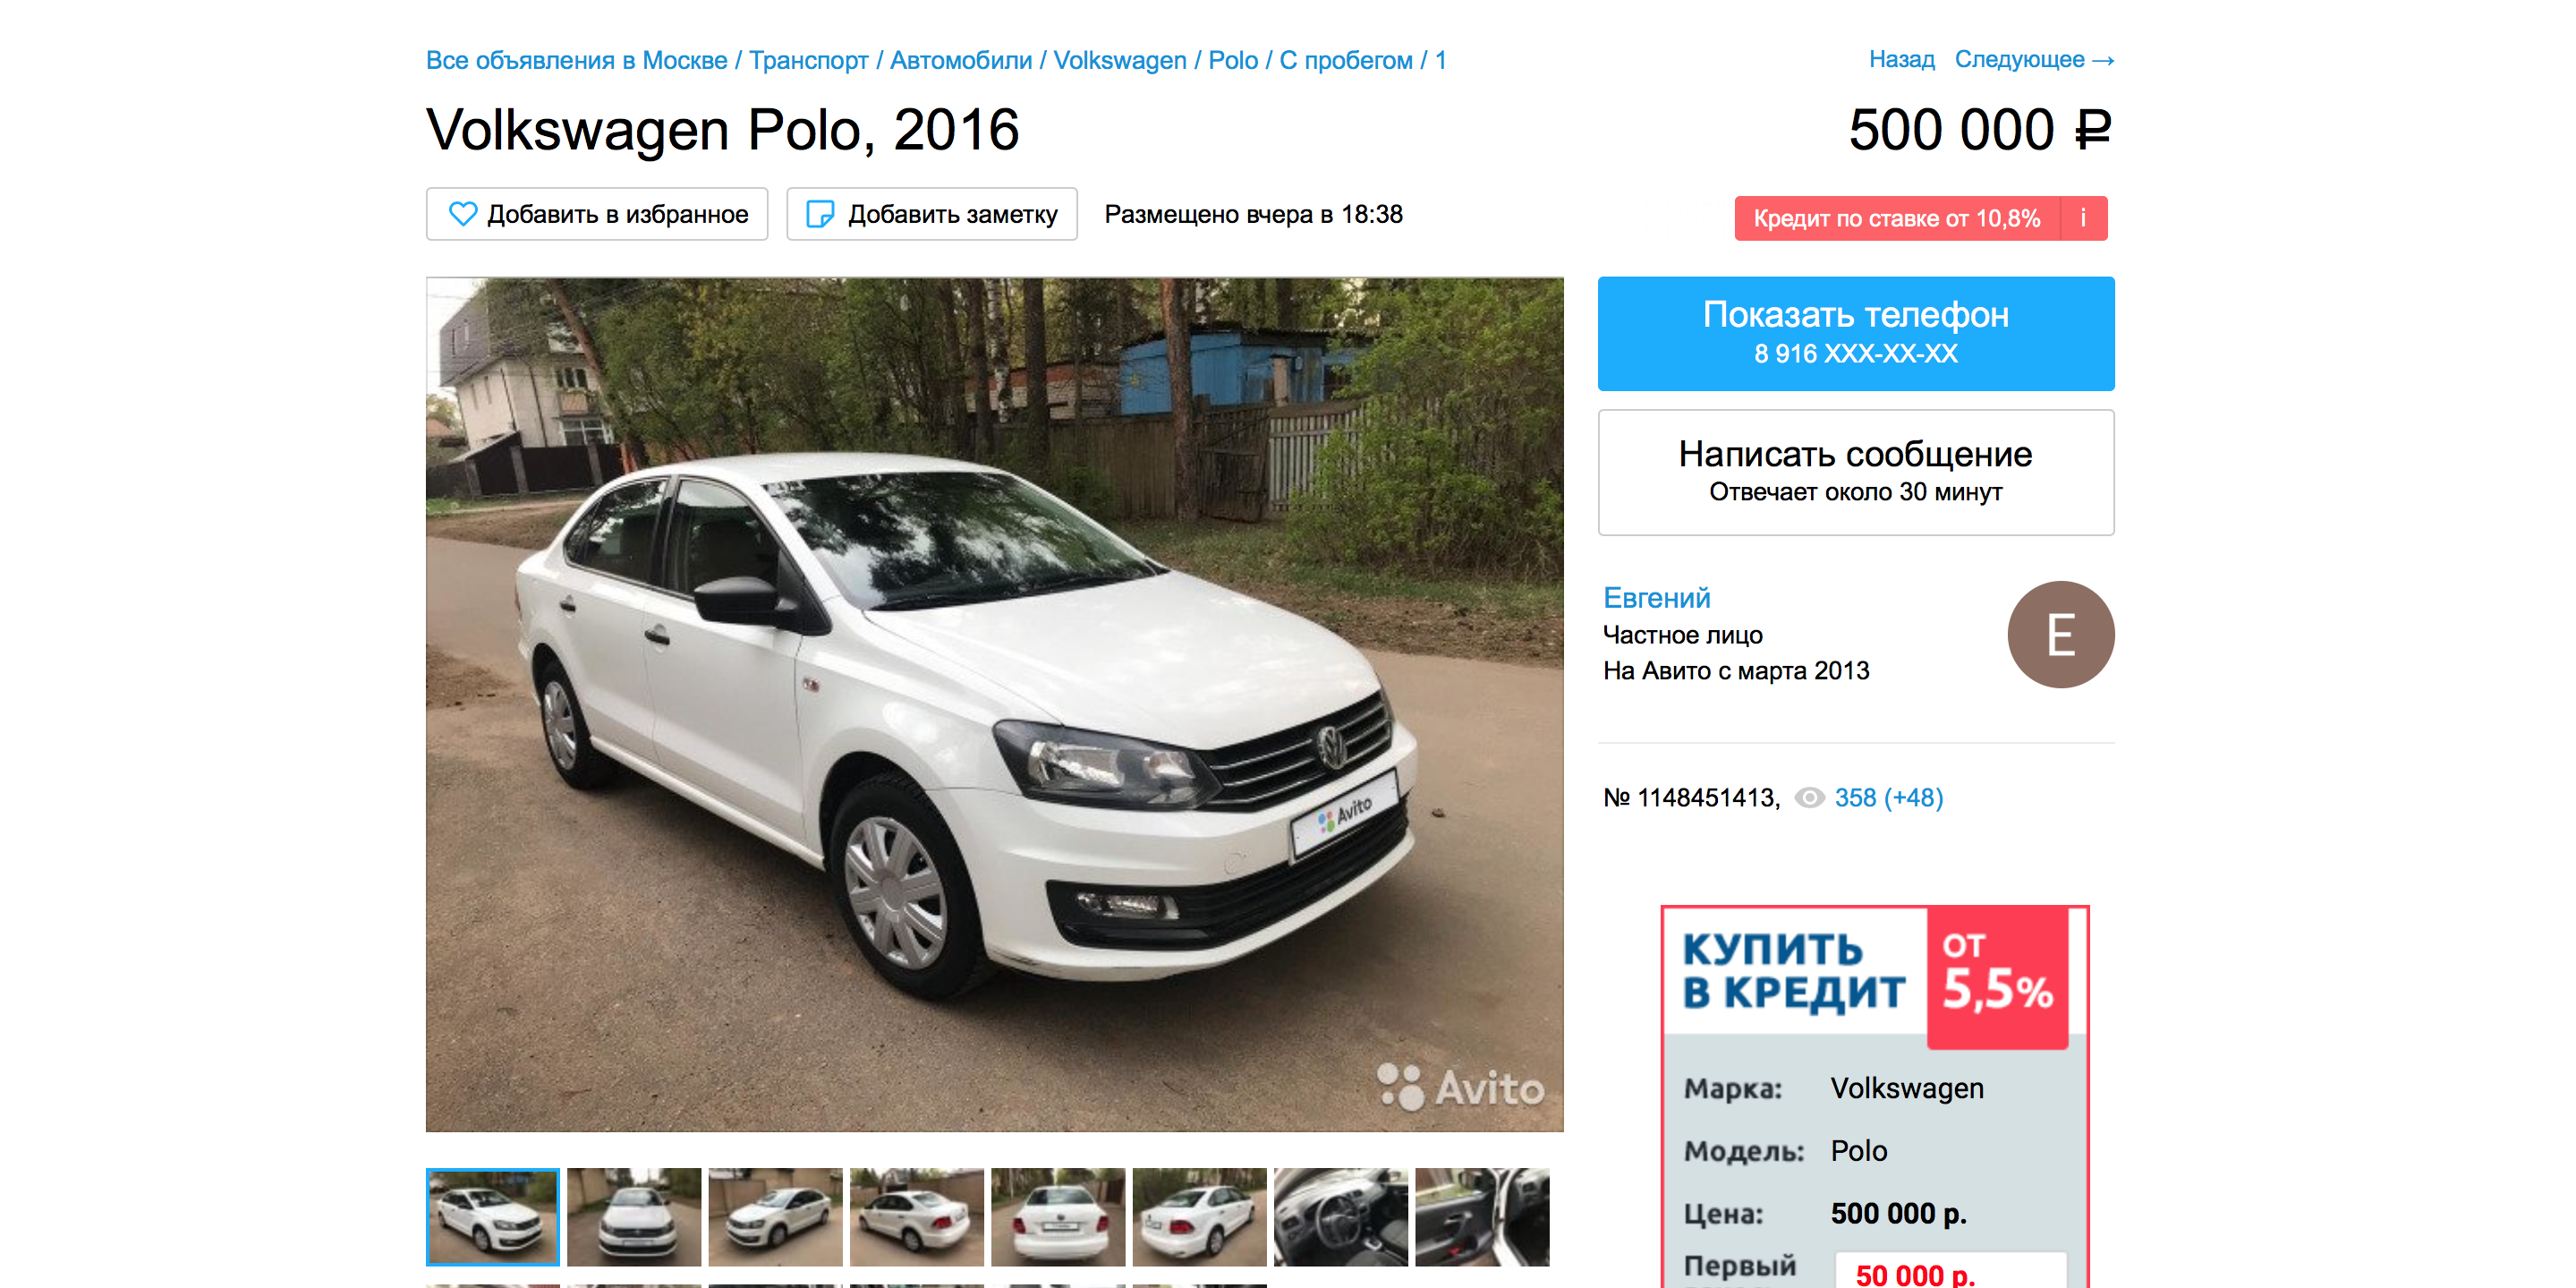 кредит на покупку автомобиля с пробегом у частного лица в москве